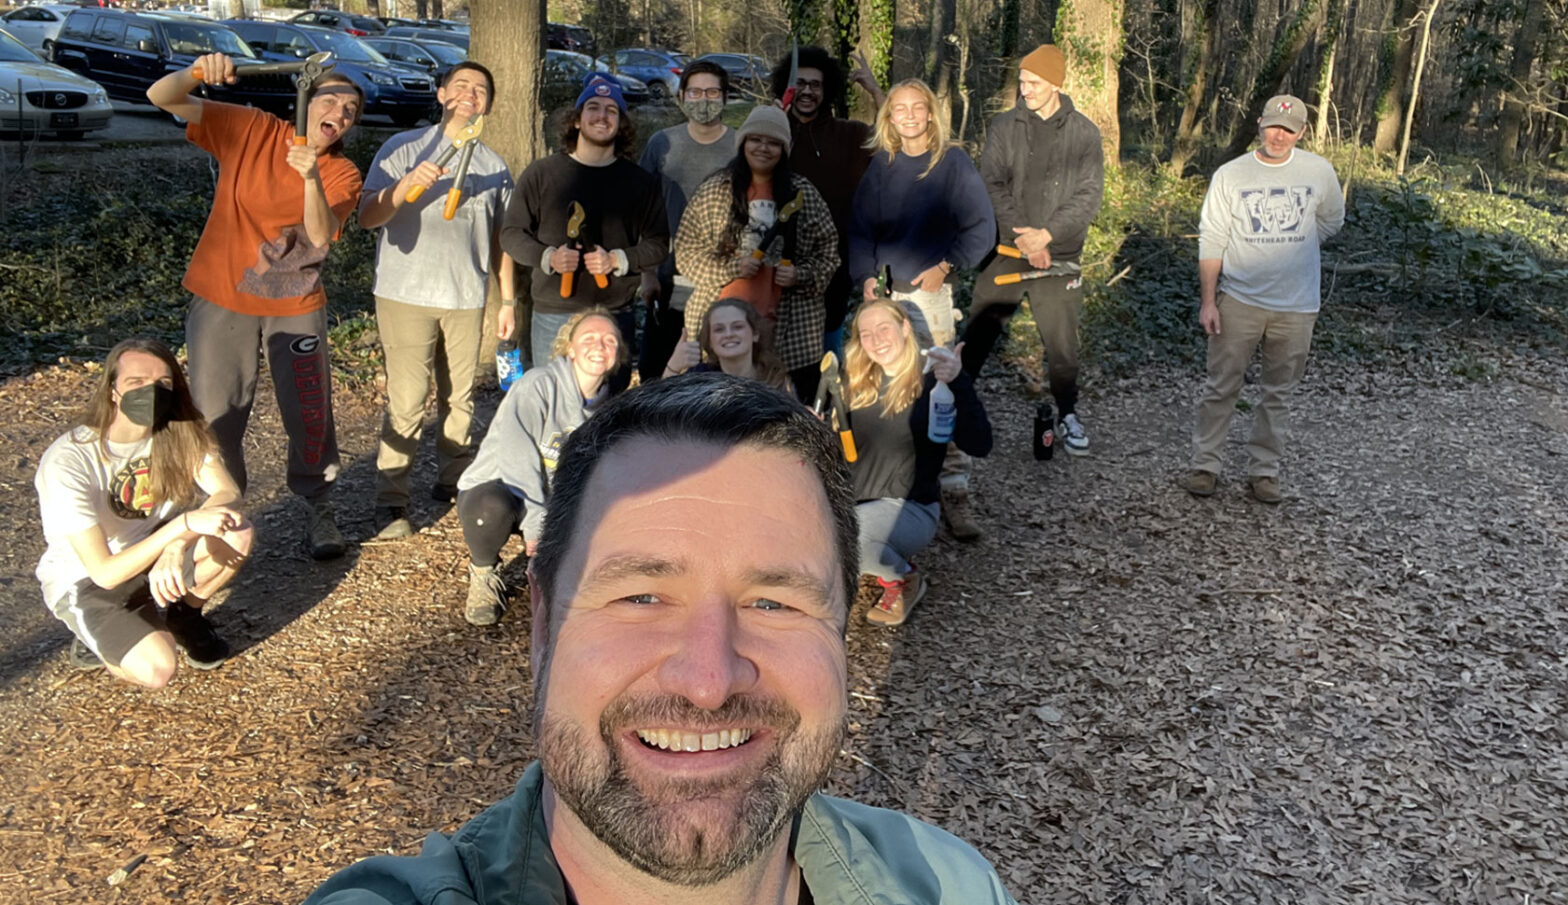 selfie of volunteer group in woods